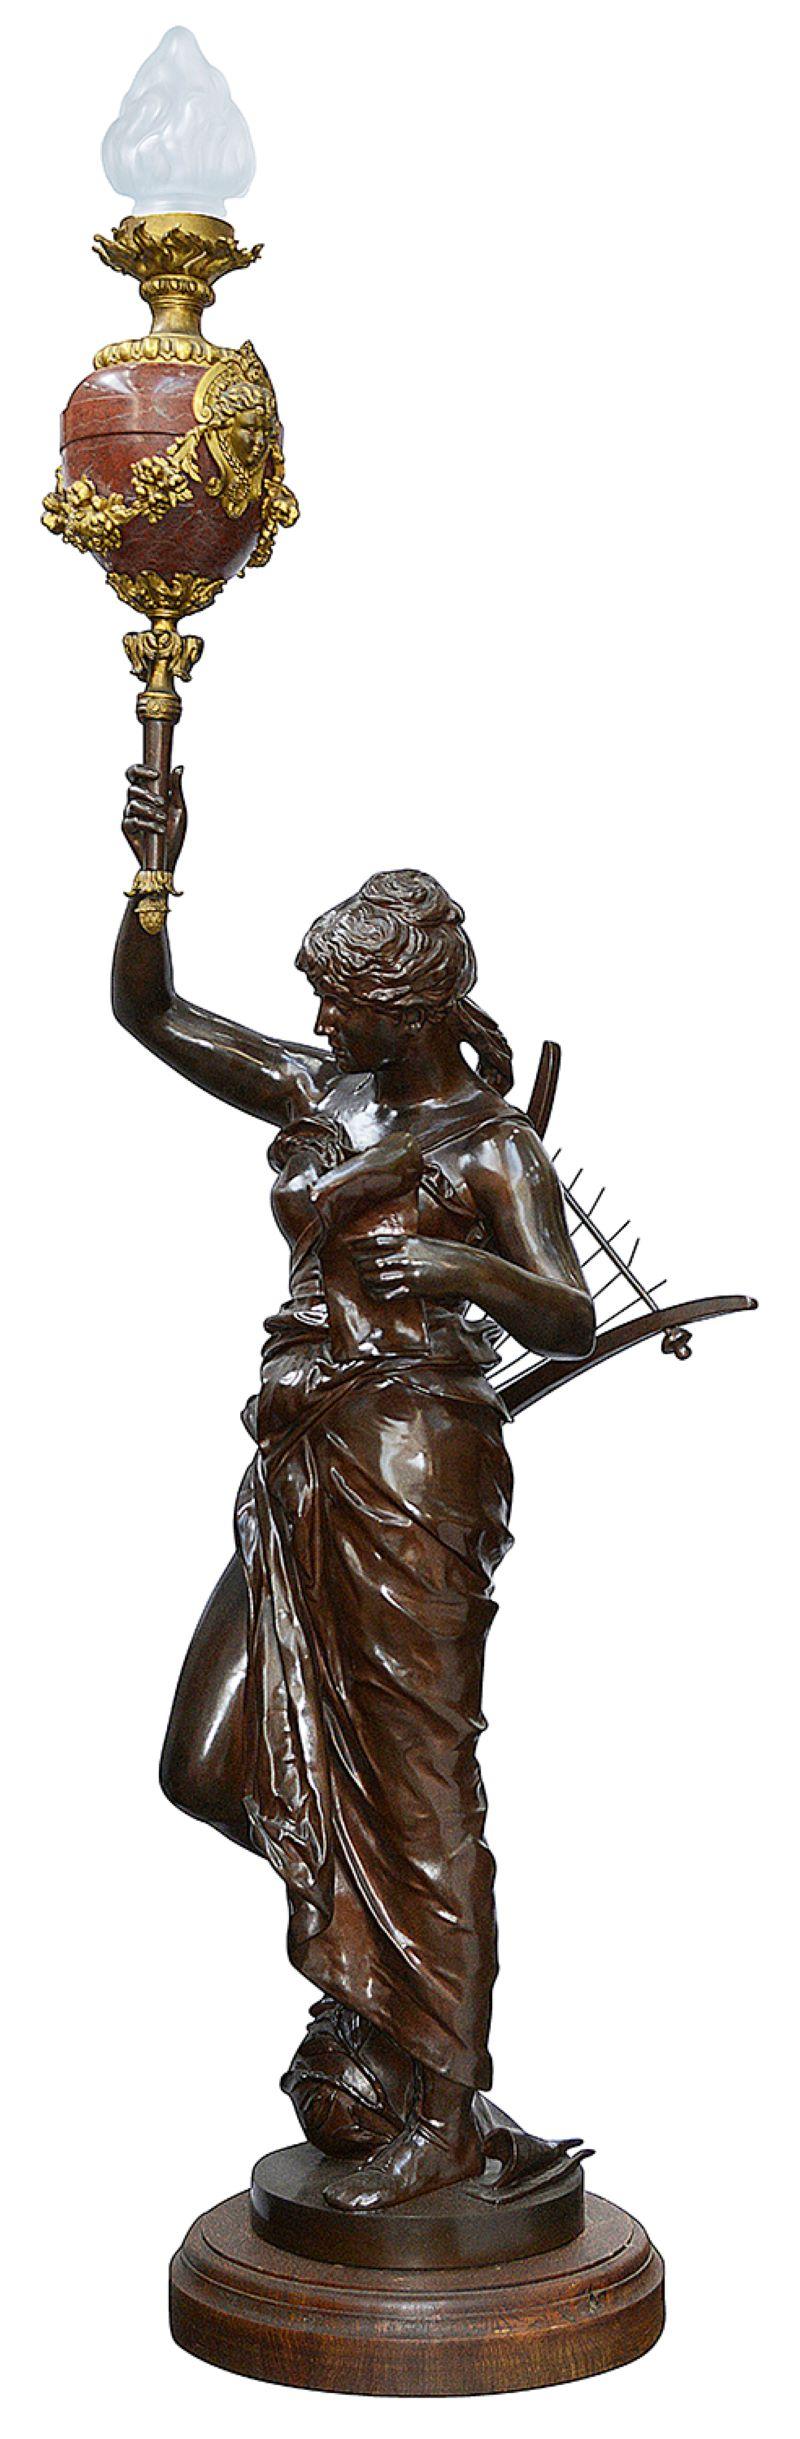 
Cette très belle torche figurative en bronze patiné représente une musicienne en tenue classique tenant une mandoline et une torche en marbre. Cette représentation symbolique de la Musique, s'inscrit dans l'œuvre allégorique de Coutan. 
Nous avons